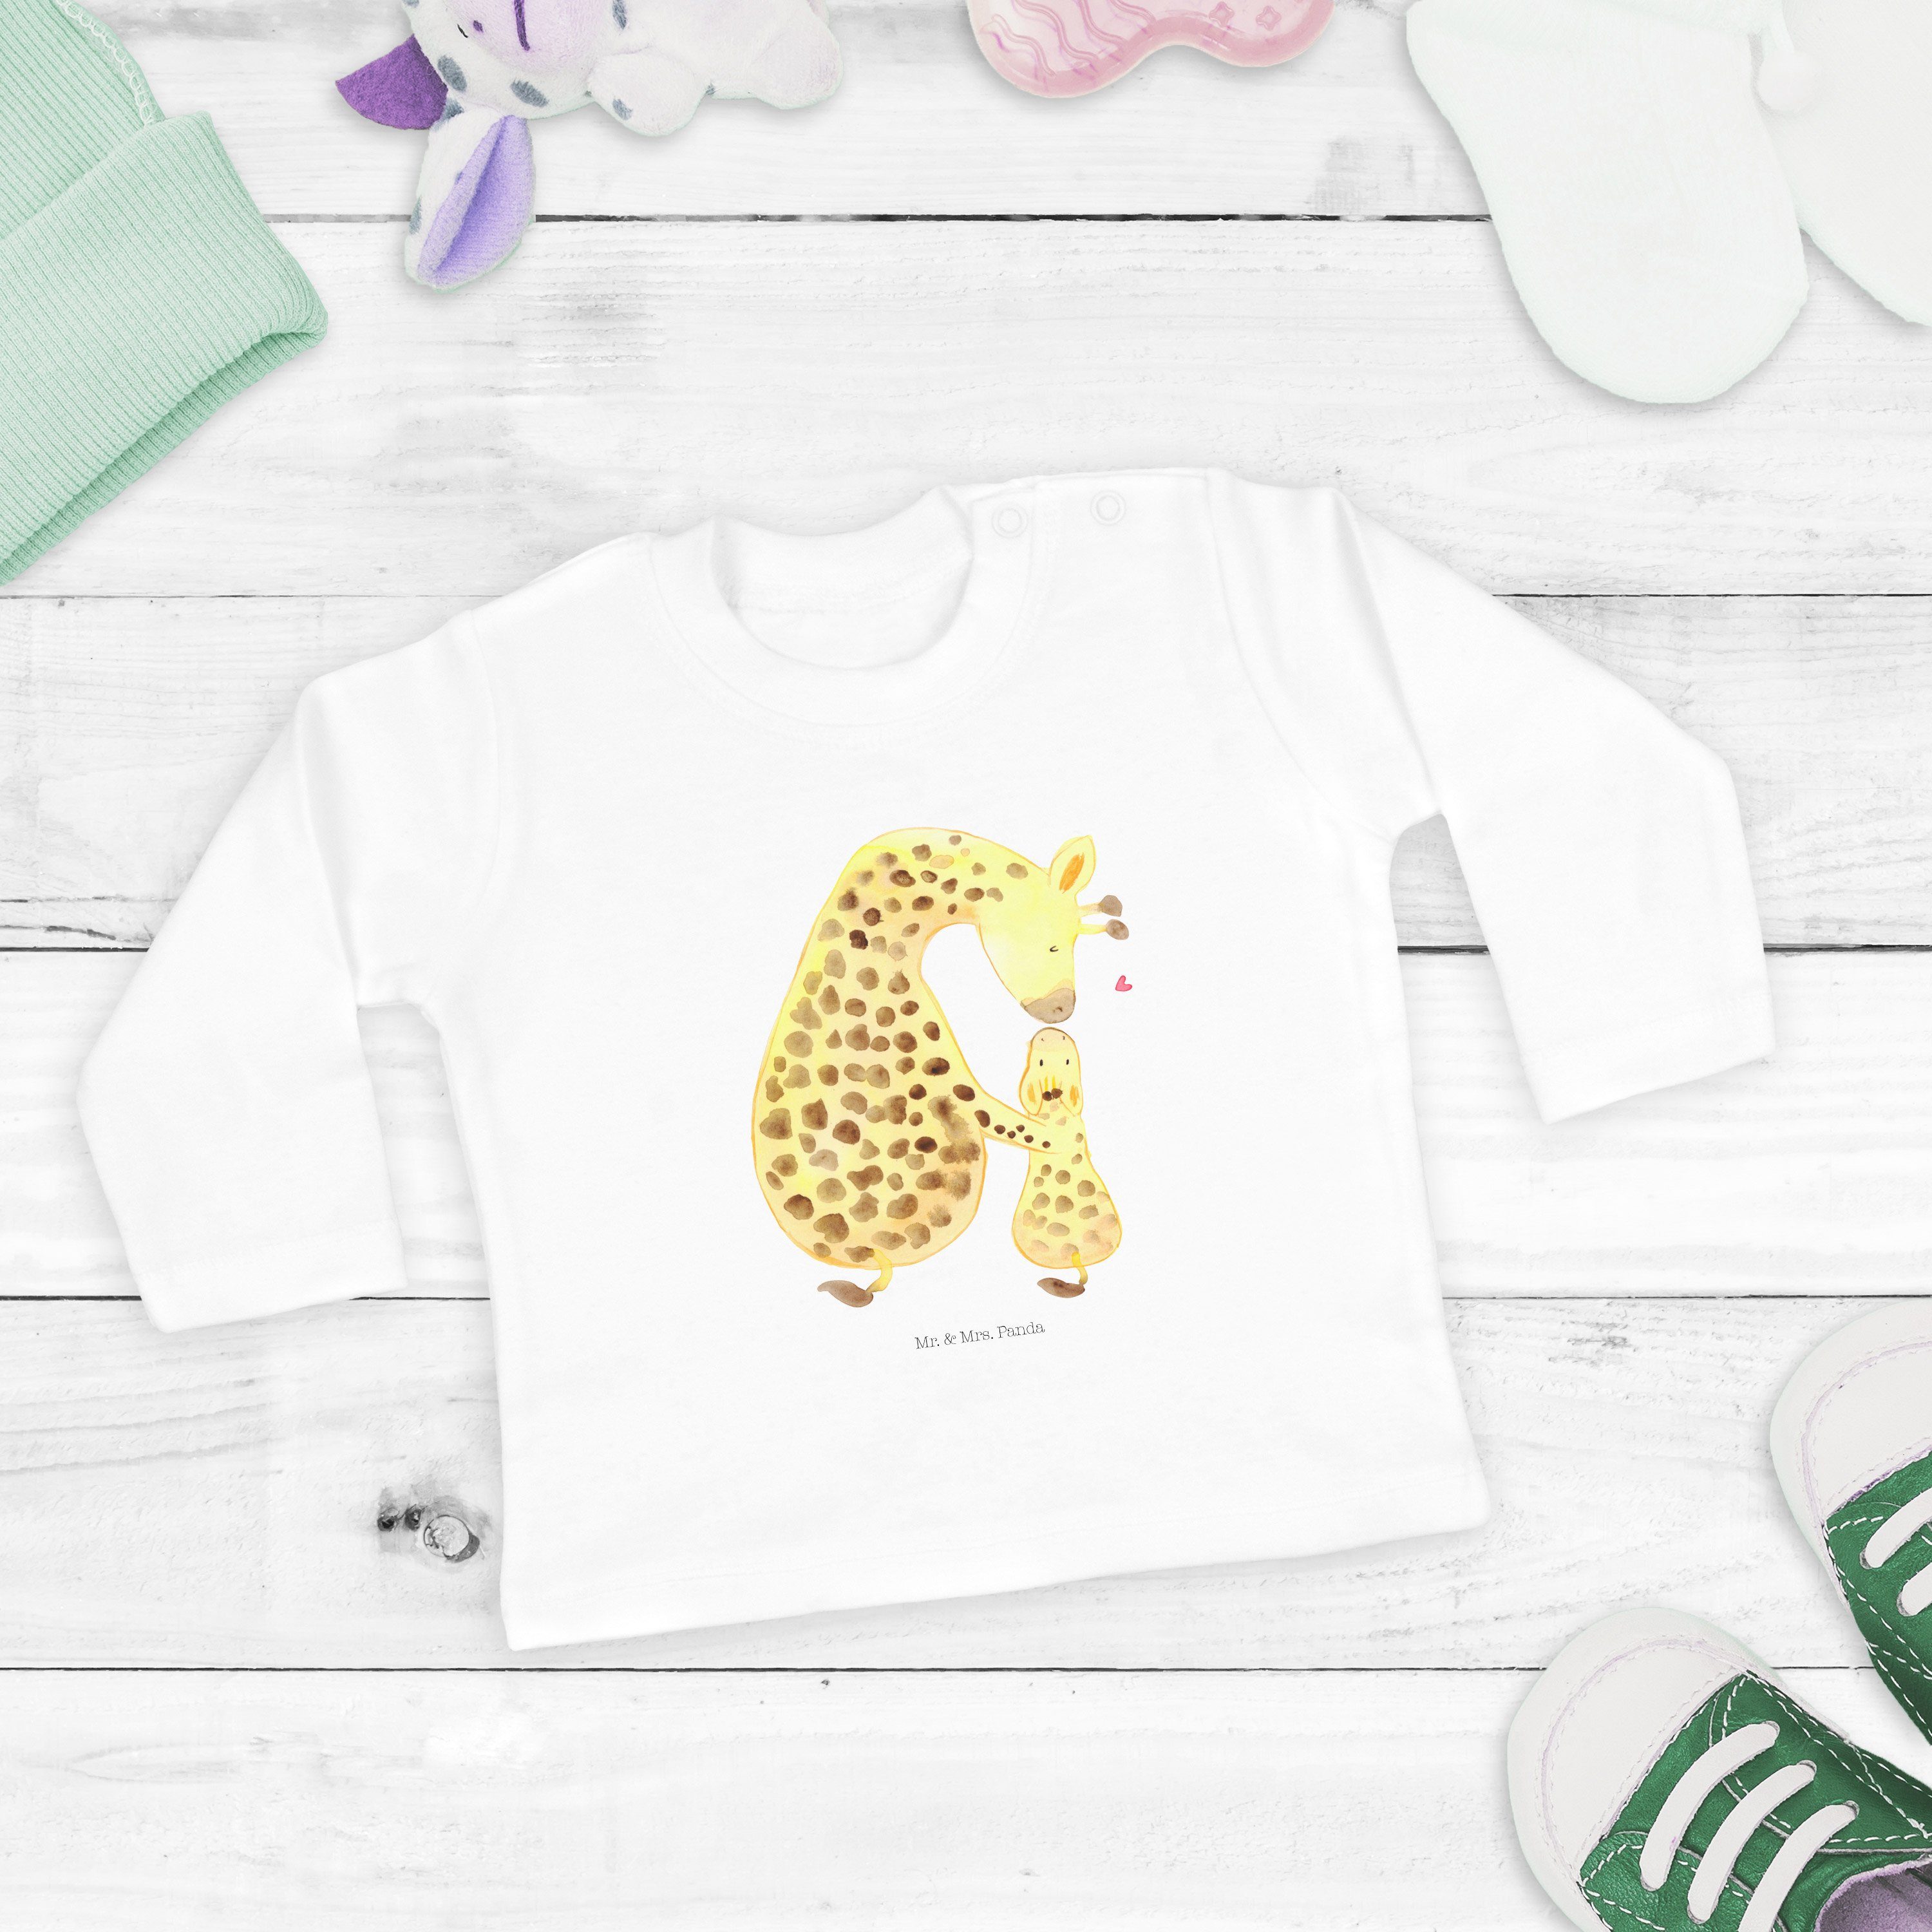 Mr. & Mrs. Panda Mama, - mit Wildtiere, Kleidung Strampler Geschenk, Kind Mutter, - (1-tlg) Giraffe Weiß